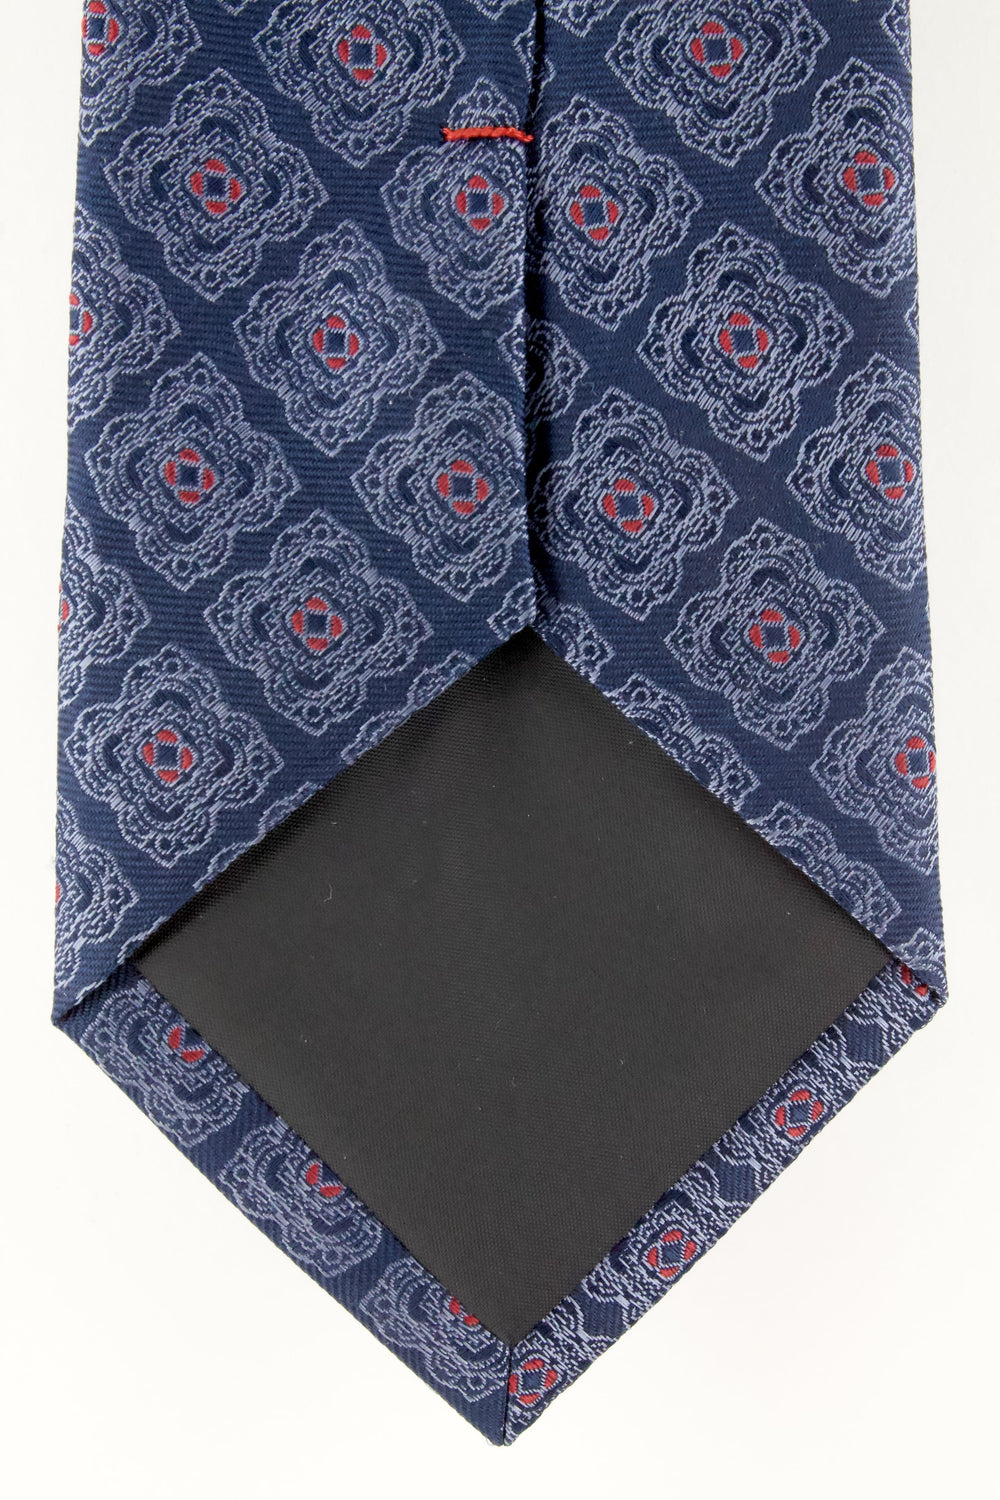 Cravate en soie tissée marine motif fleur